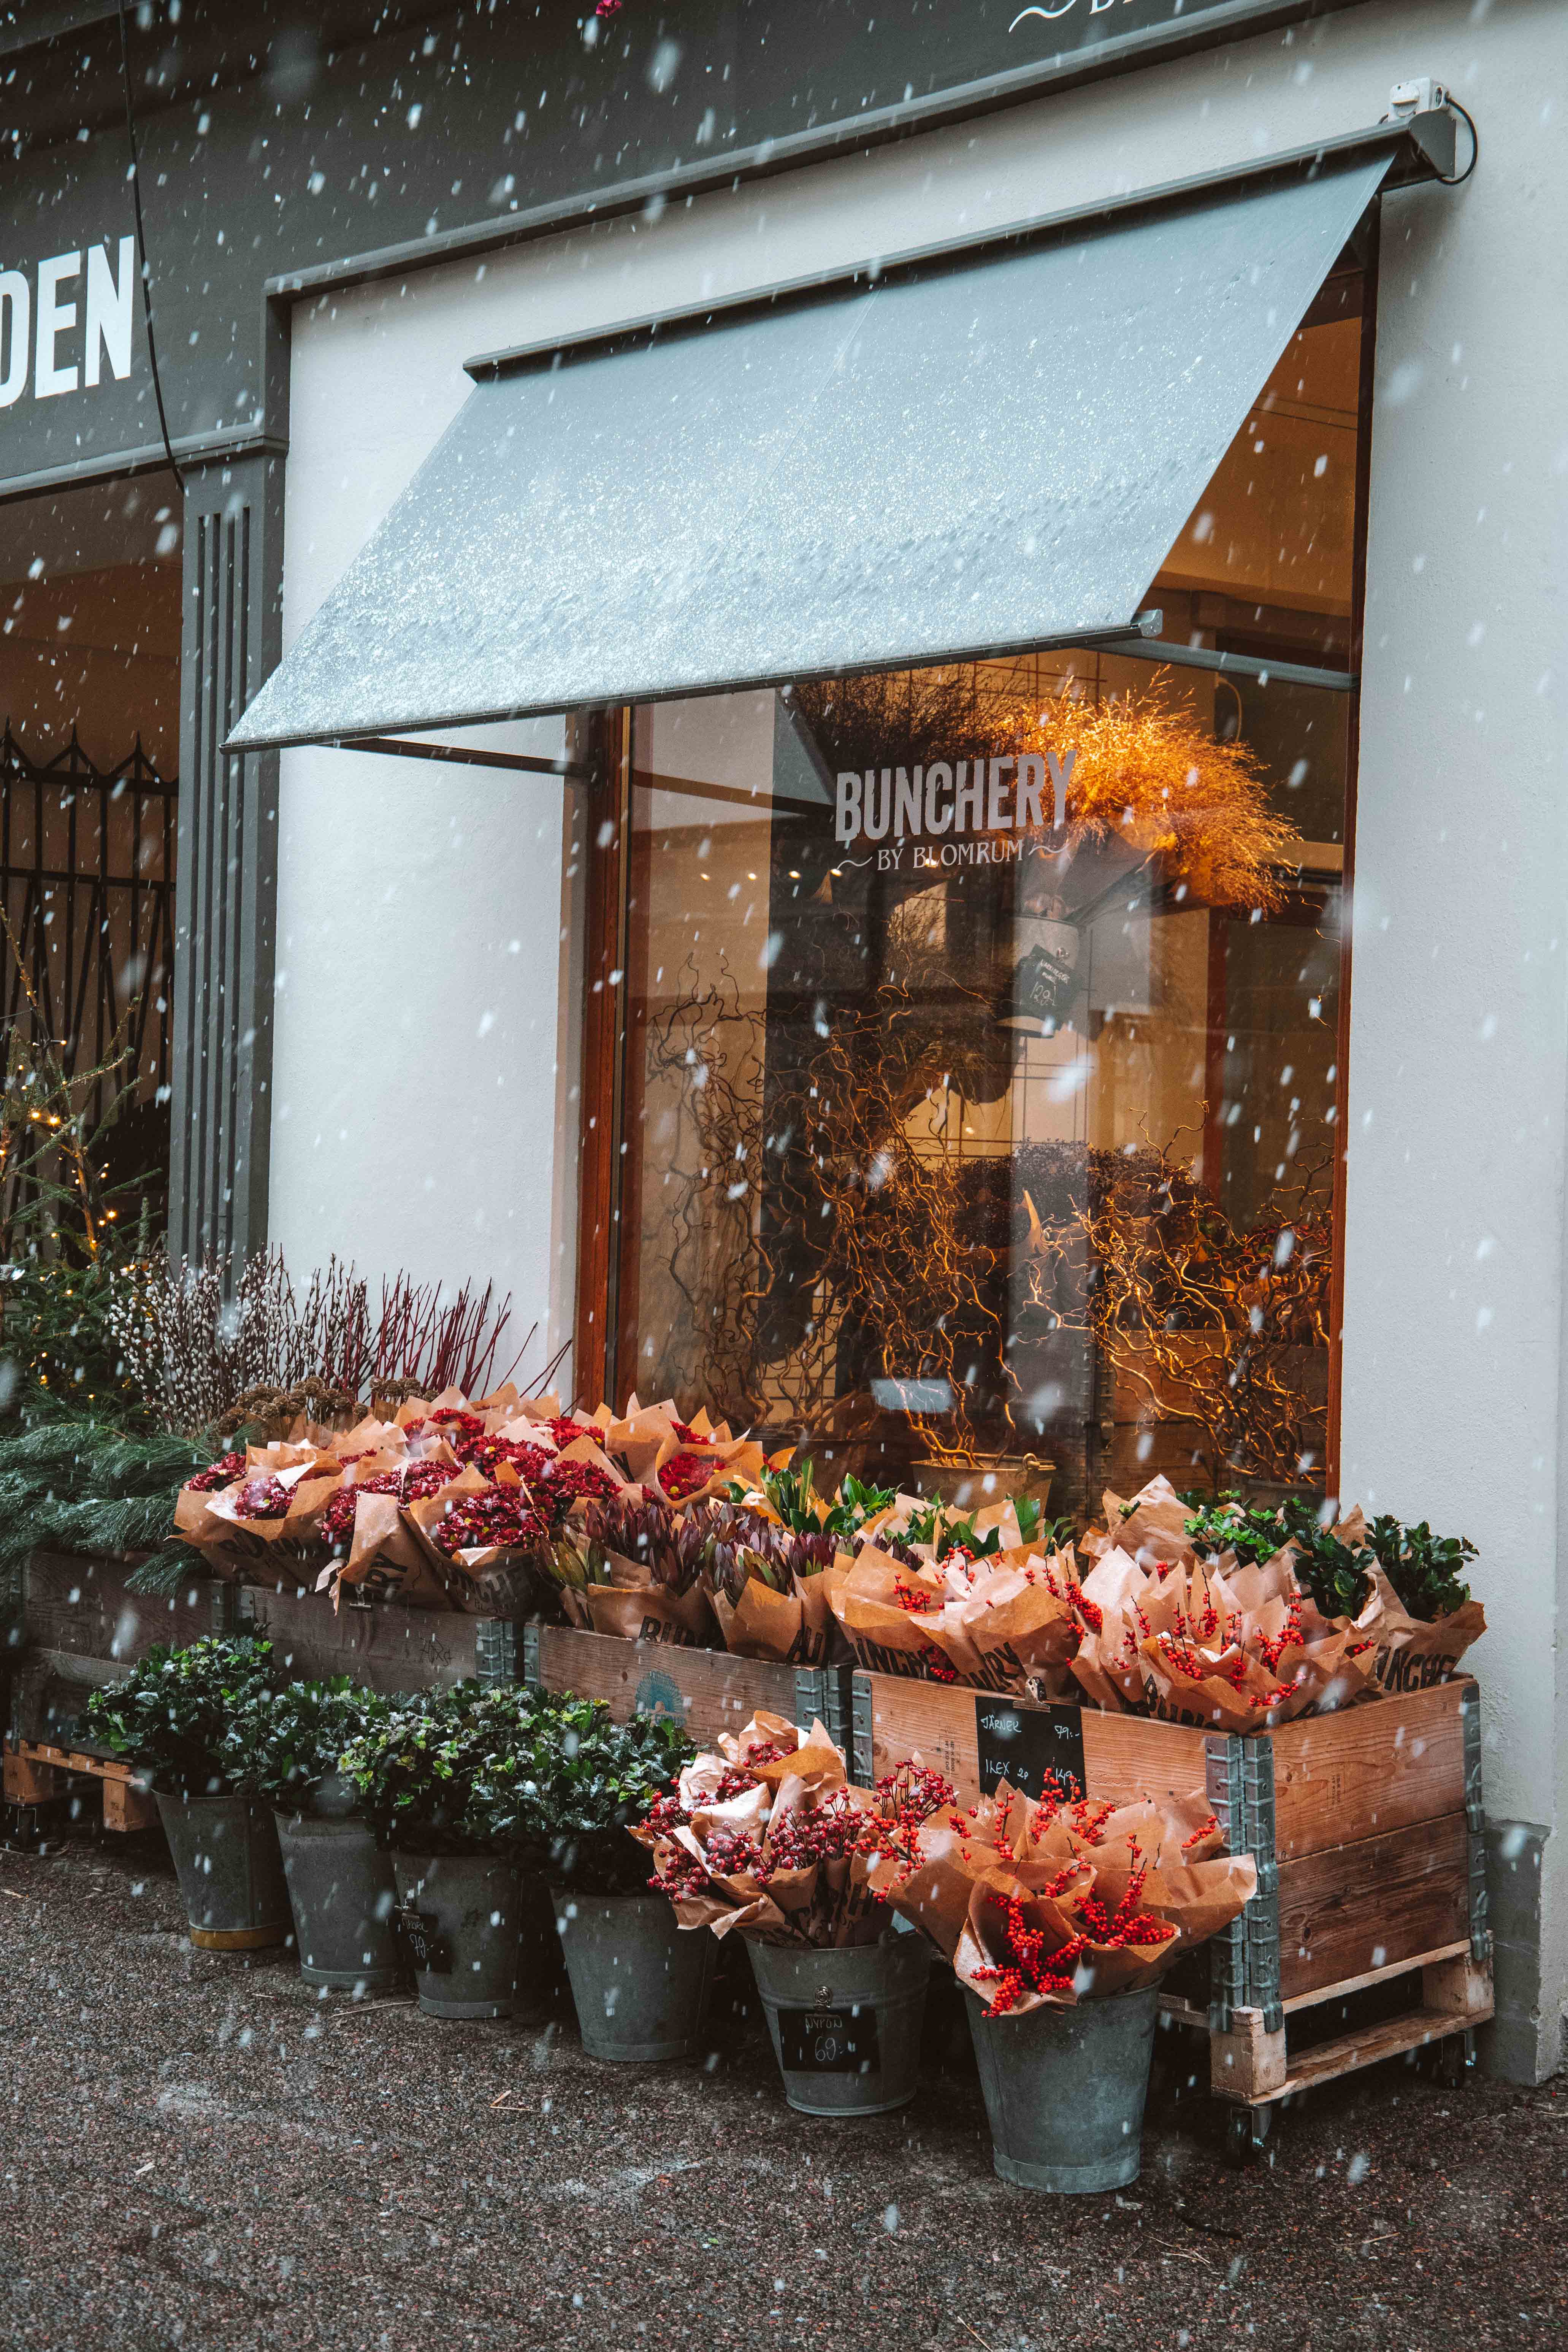 snowing outside flower shop in sweden